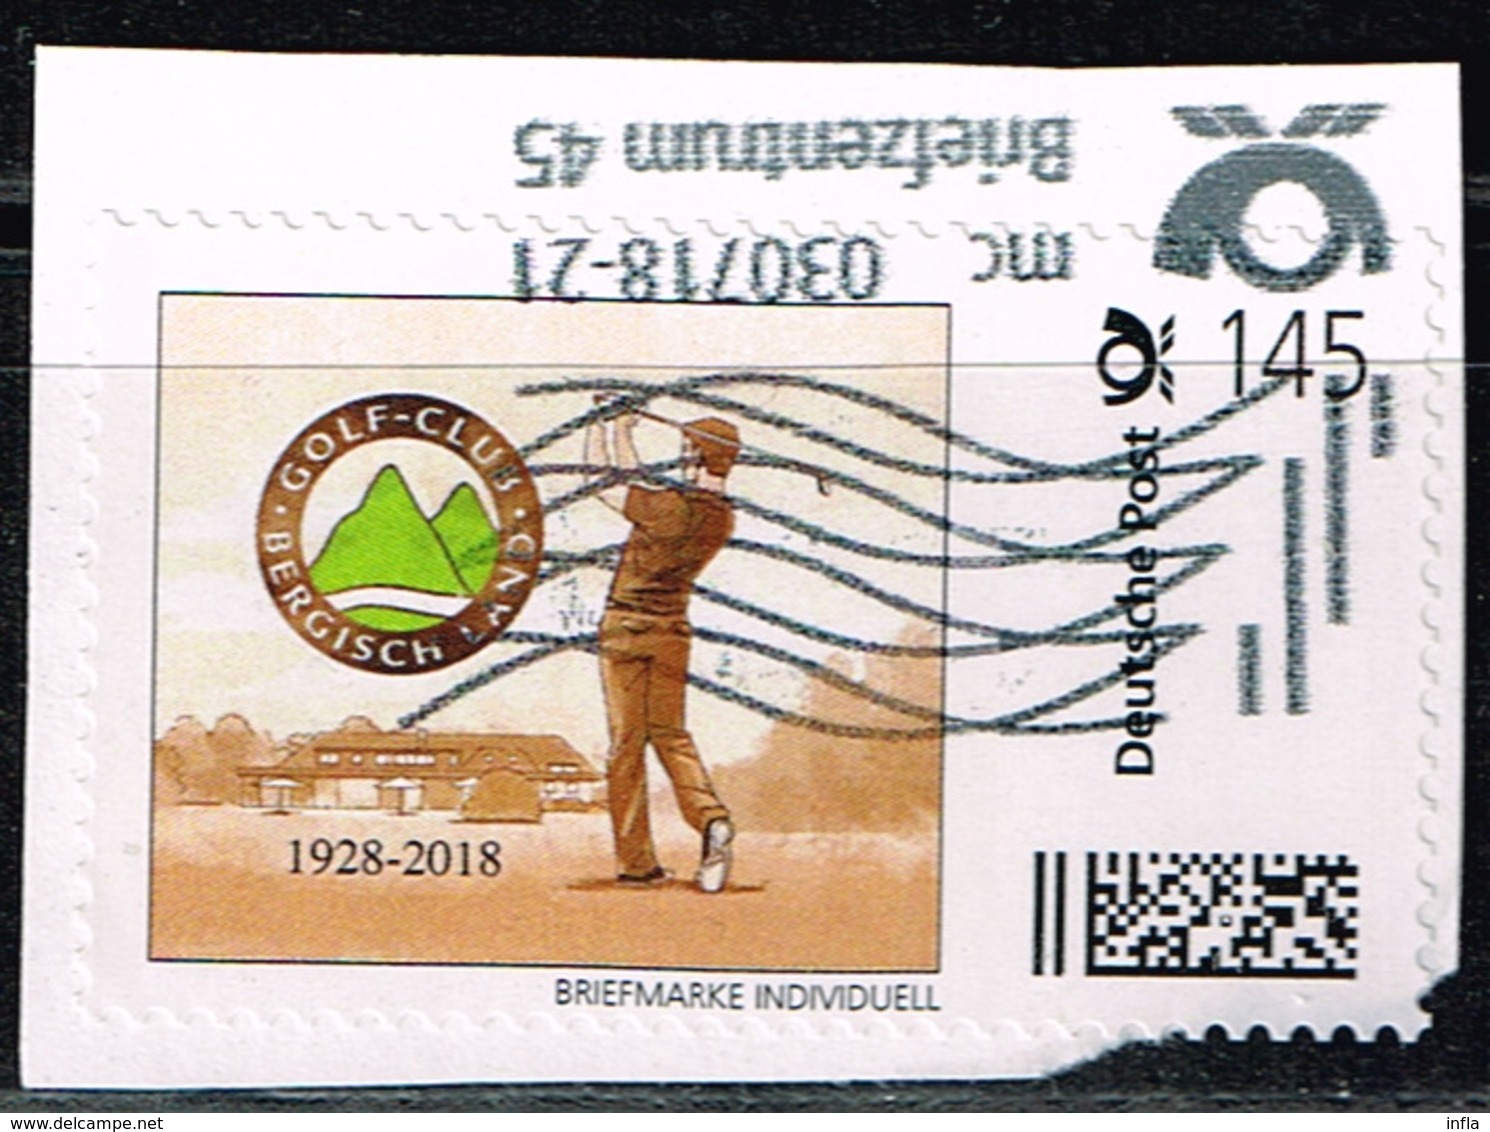 Briefmarke-individuell, Golf-Club Bergisch - Gladbach - Privados & Locales